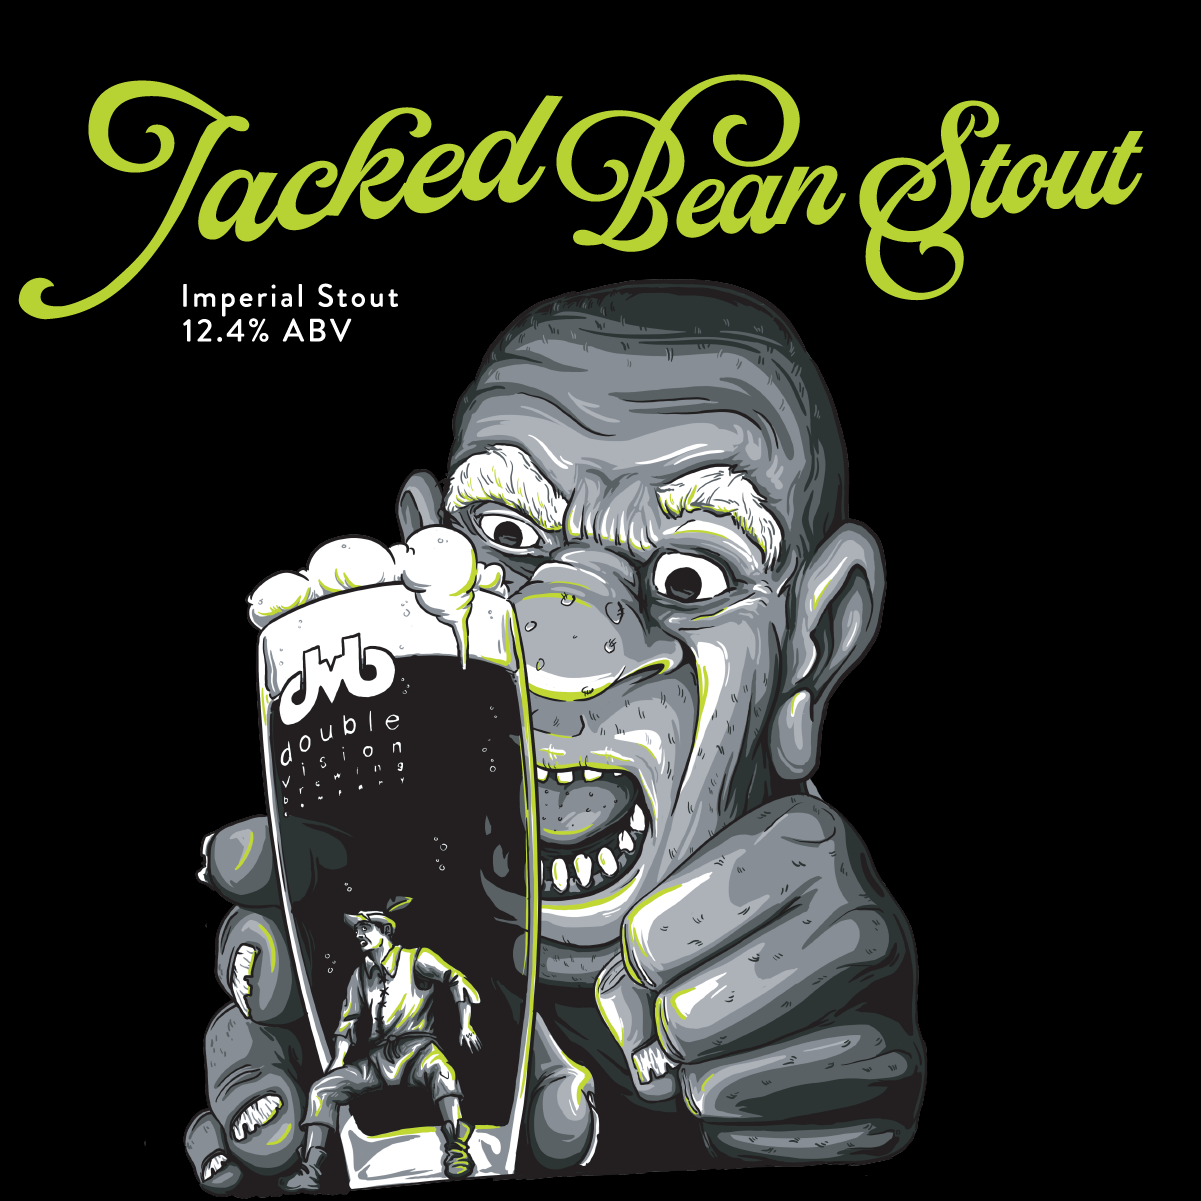 Jacked Bean Stout